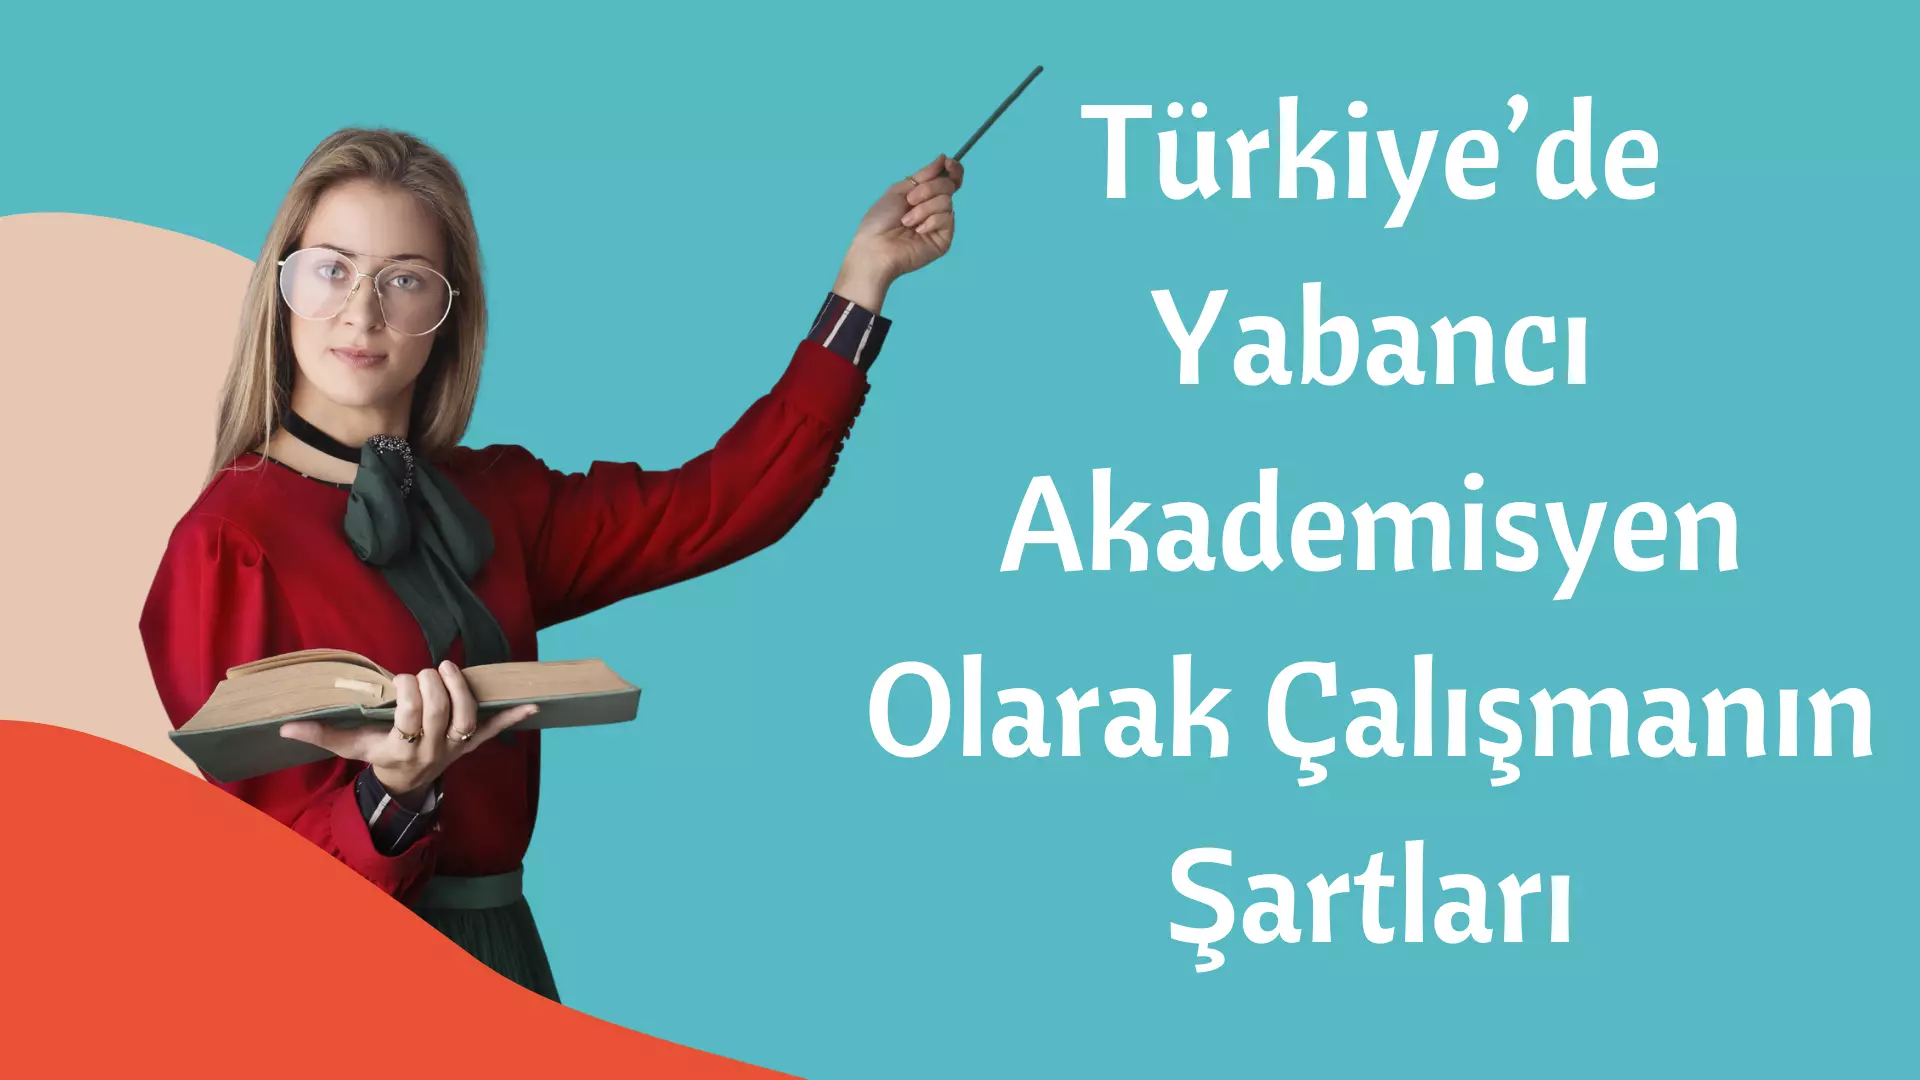 Türkiye’de Yabancı Akademisyen Olarak Çalışmanın Şartları